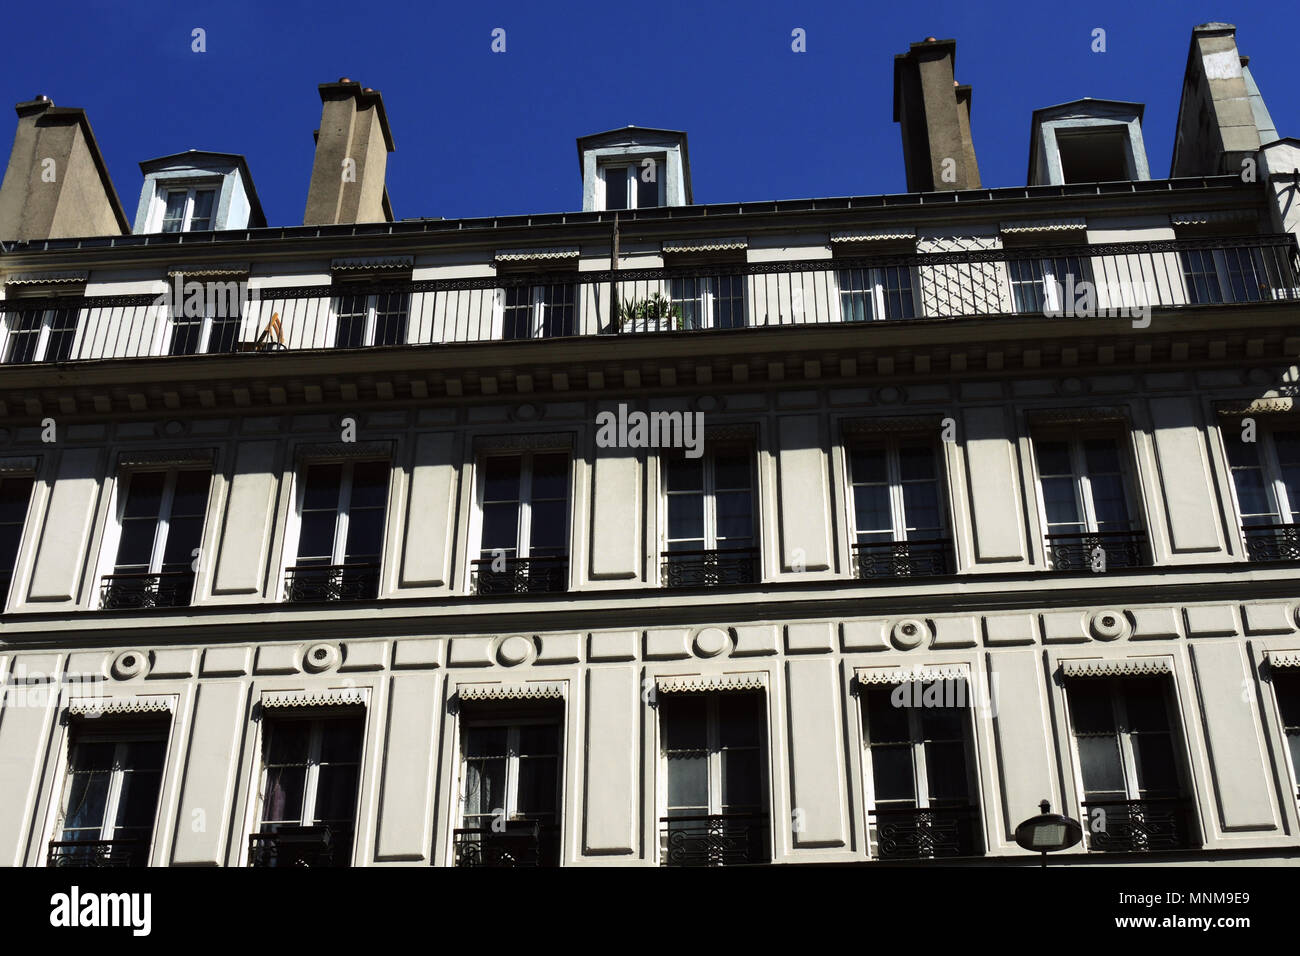 PARIS FRANCE - PARIS WINDOWS AND FACADES - PARISIAN BUILDINGS AND BALCONIES - TYPICAL PARISIAN BUILDINGS - PARISIANS HOMES © Frédéric BEAUMONT Stock Photo